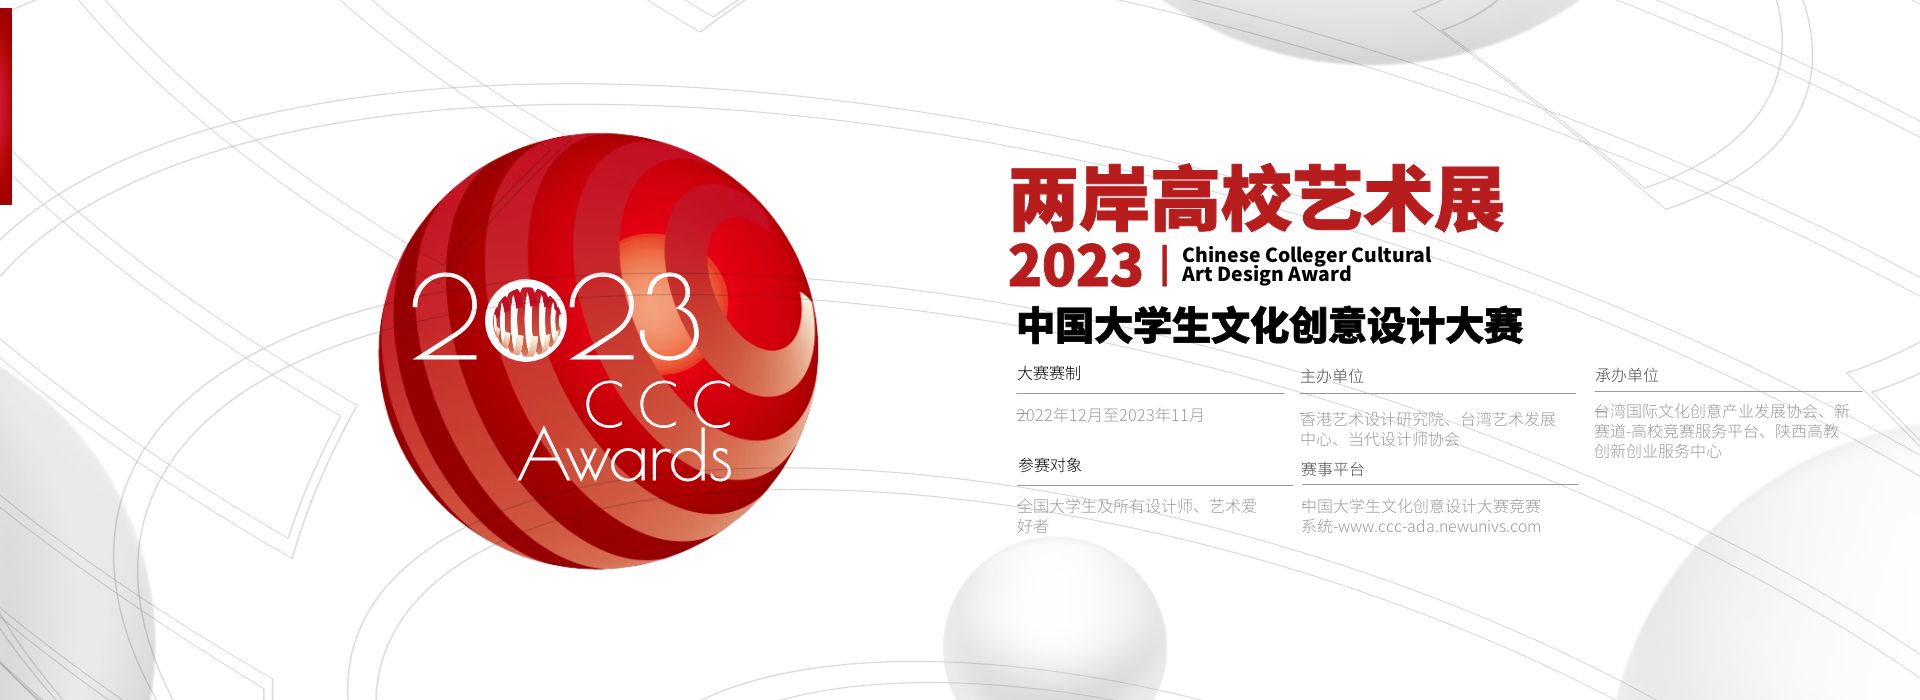 2023年中国大学生文化创意设计大赛-横版海报